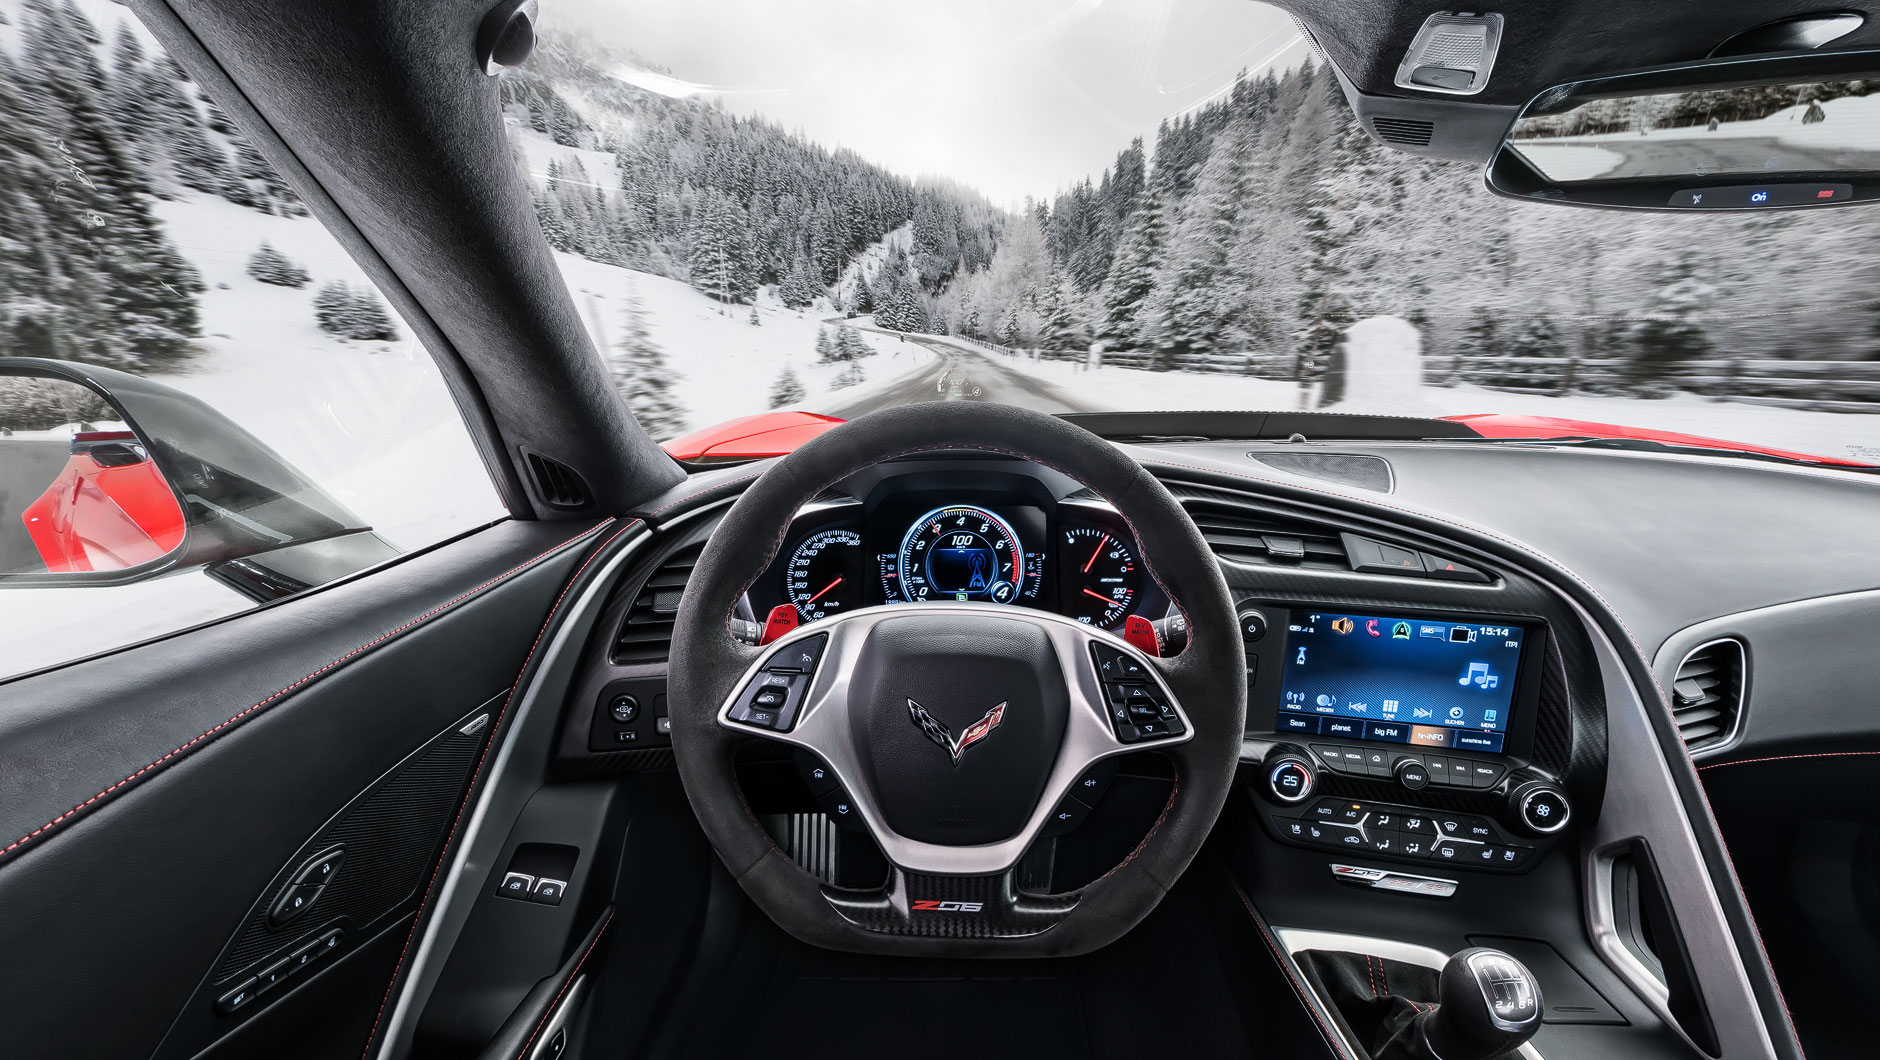 Autoinnenraum / Interieur einer Chevrolet Corvette Z06. Bild aufgenommen aus der Perspektive des Fahrers. Der Sportwagen fährt auf einer Straße in den Alpen umgeben von einer reizvollen Schneelandschaft.